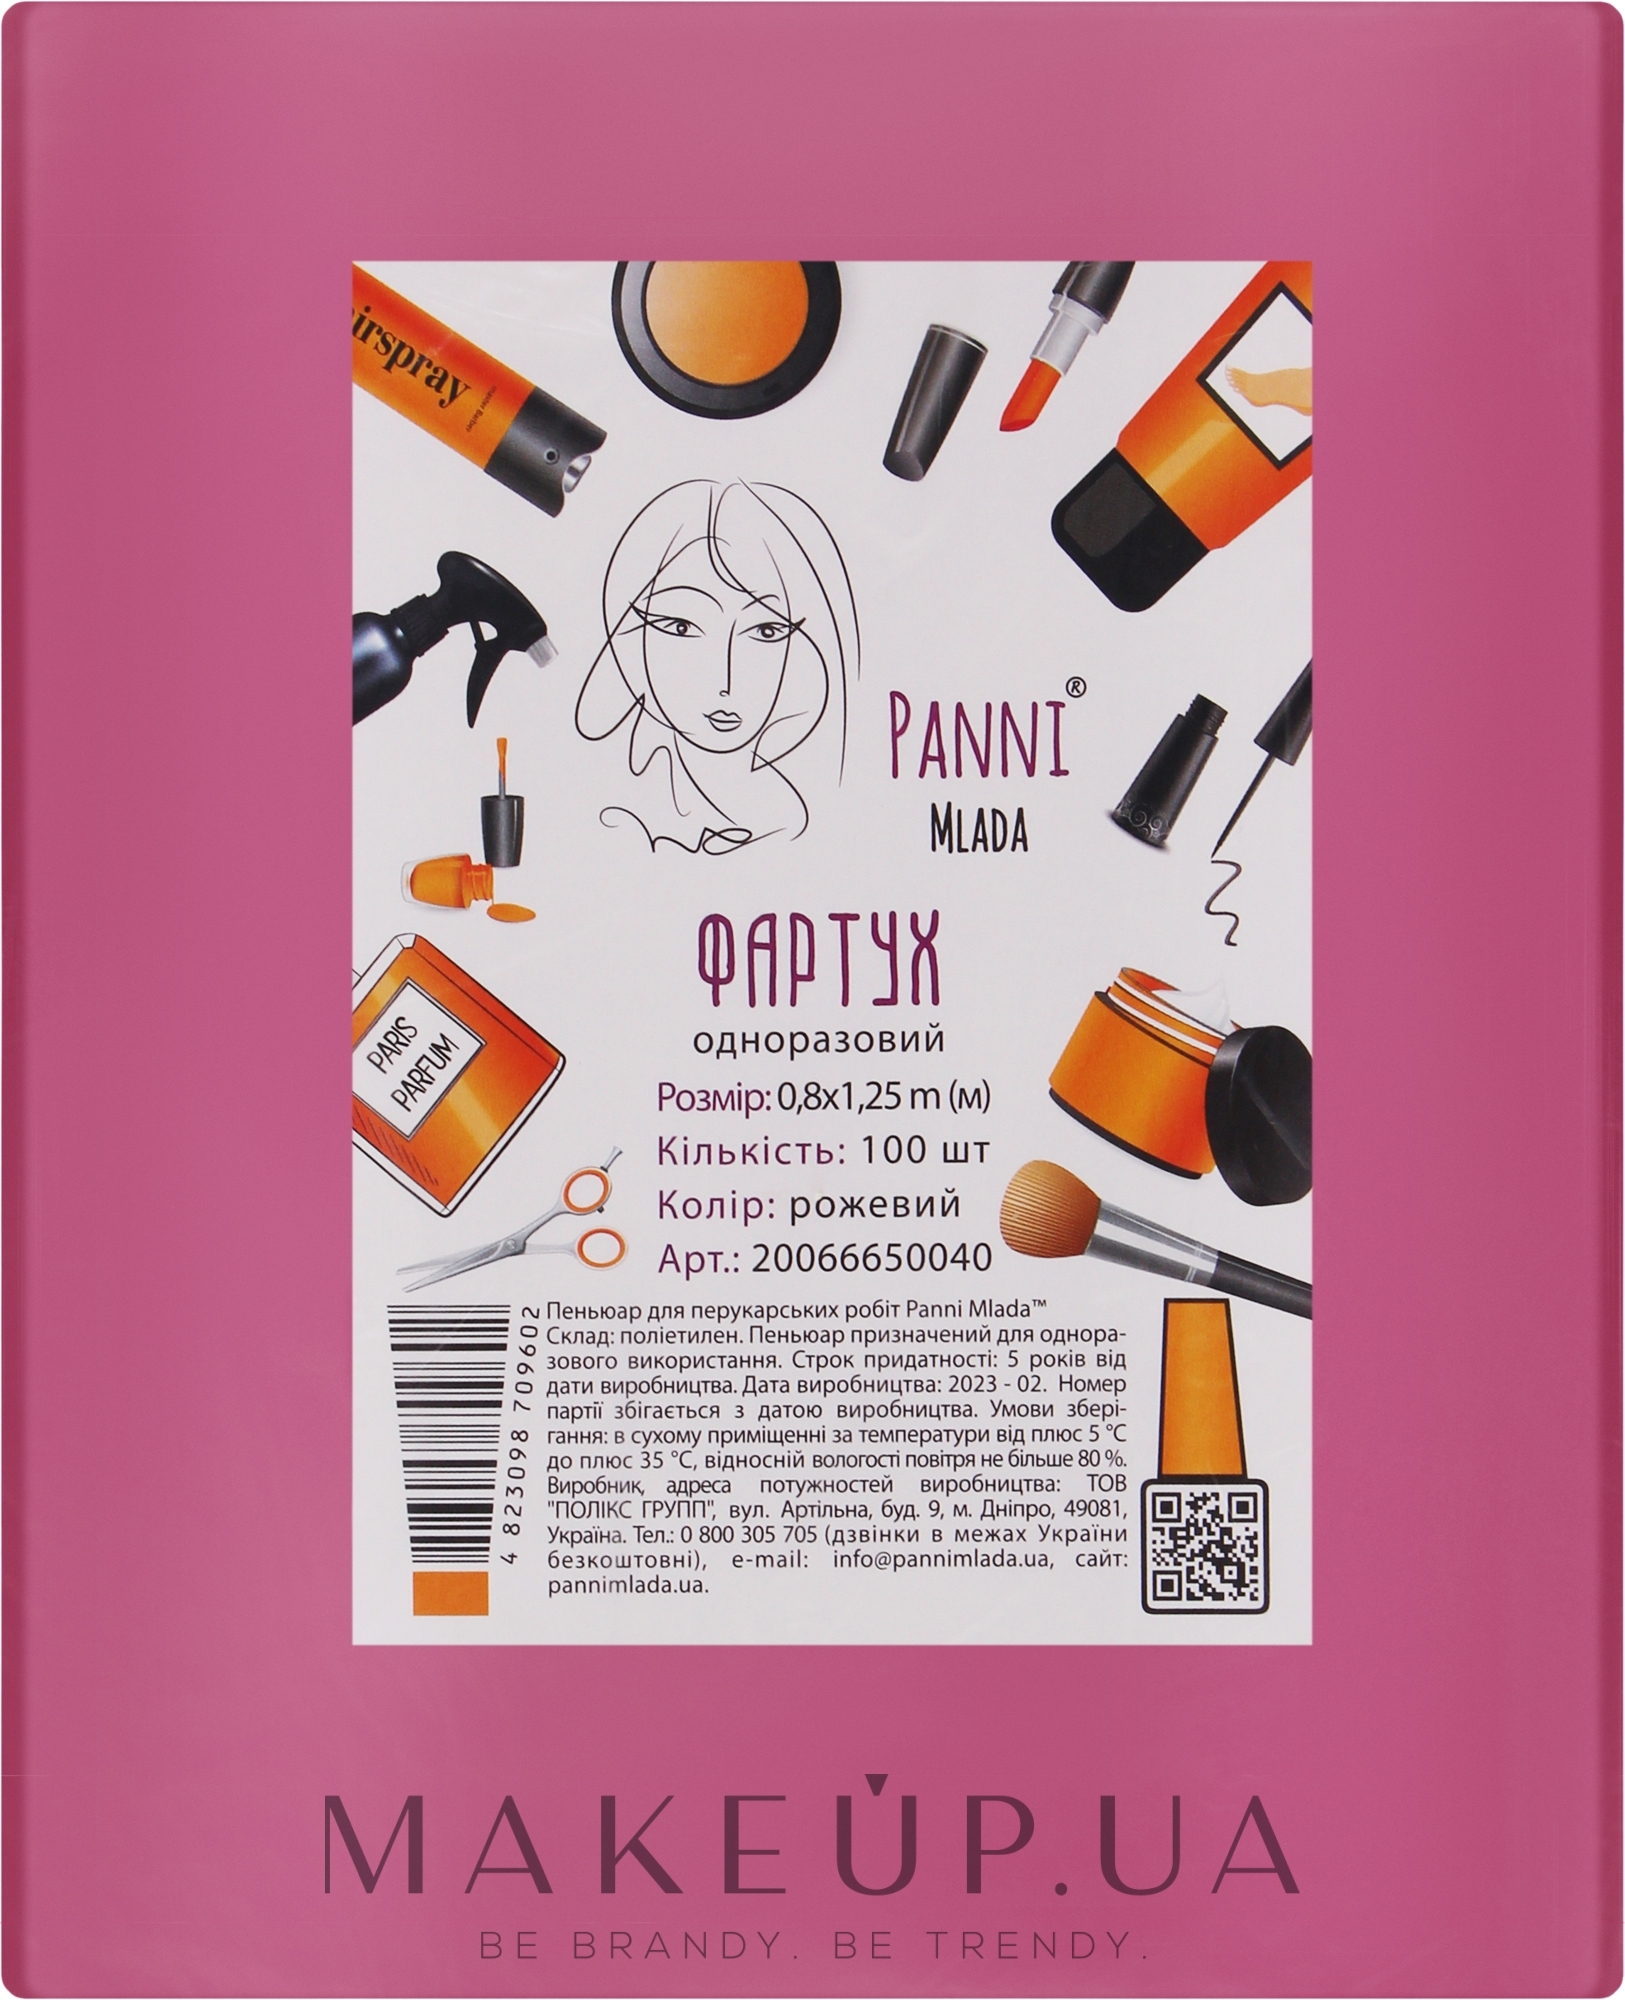 Фартук для парикмахерских работ 80х125 см., полиэтилен, розовый, 100 штук - Panni Mlada — фото 100шт